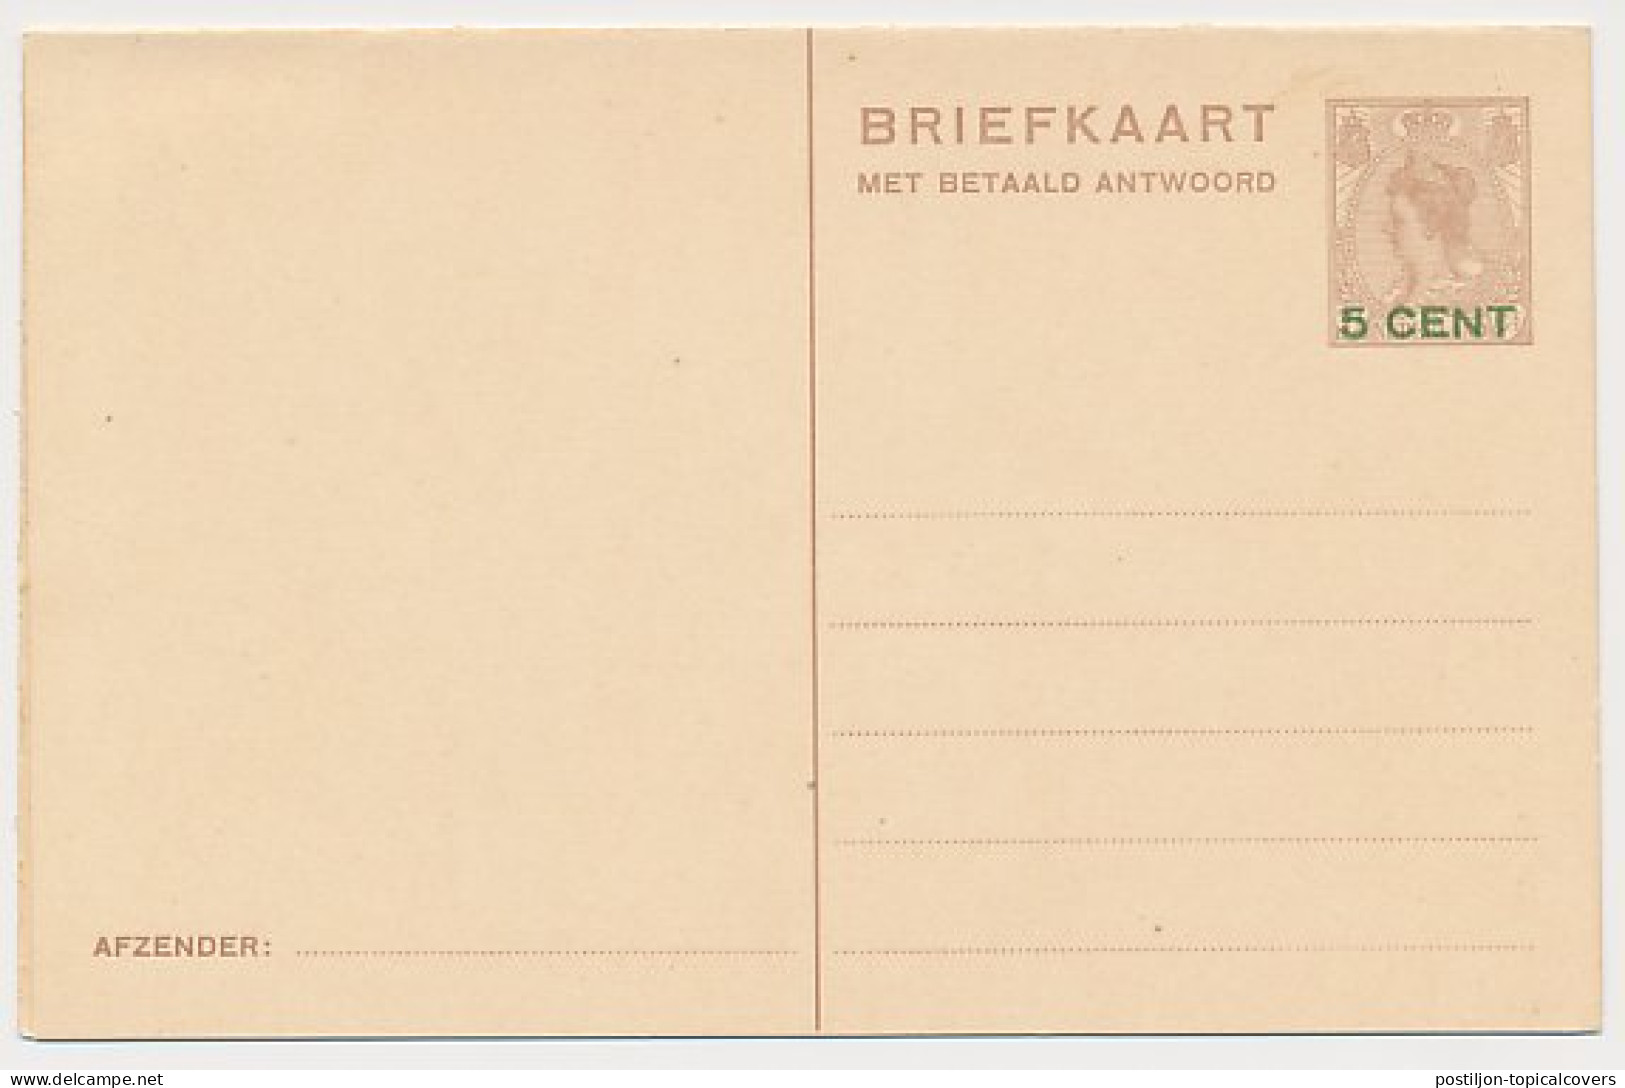 Briefkaart G. 221 - Entiers Postaux